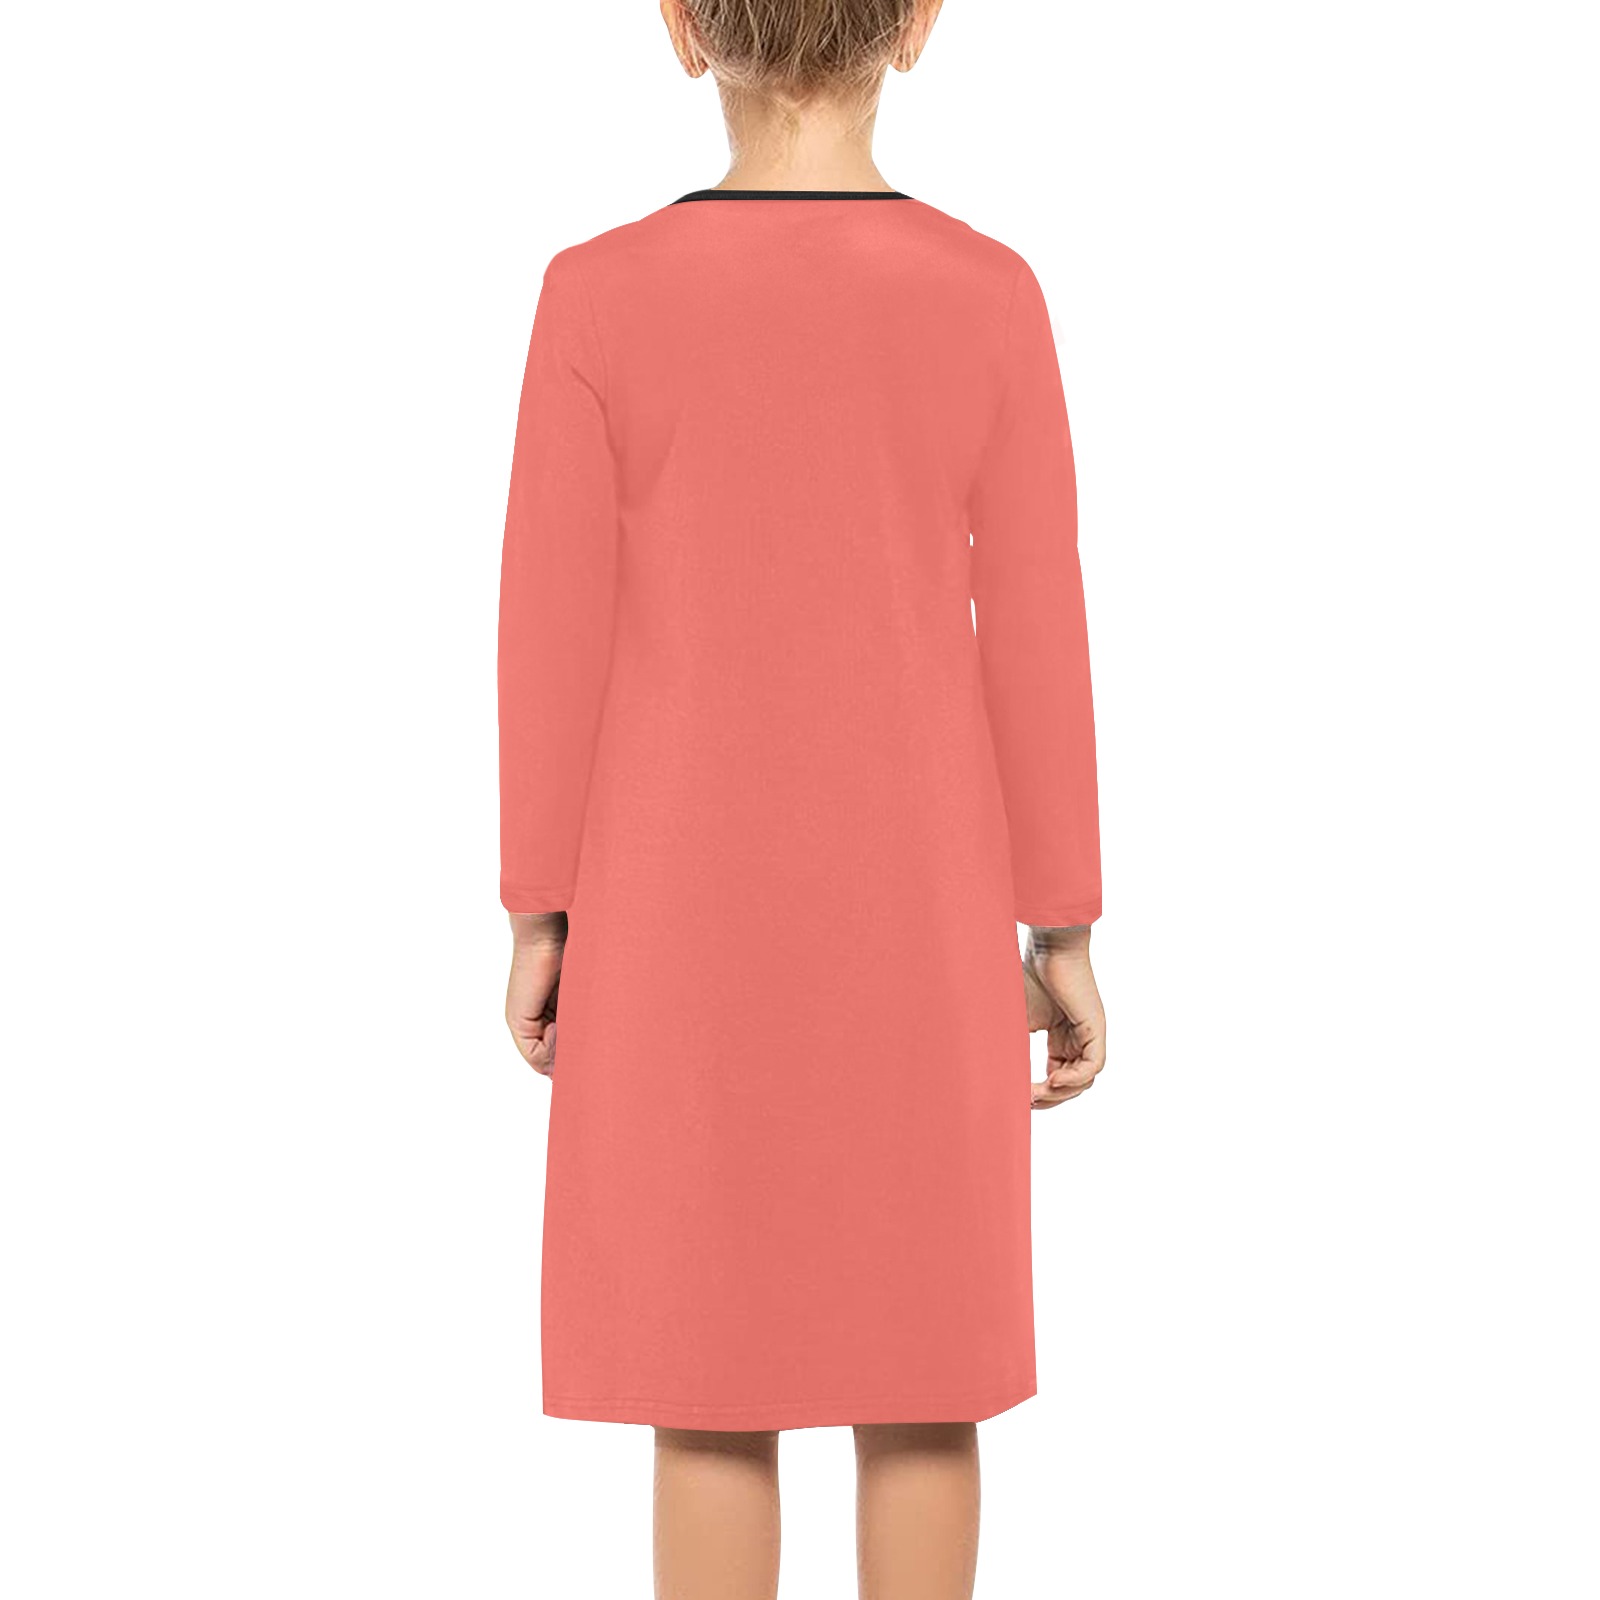 Foxy Roxy Coral Girls' Long Sleeve Dress (Model D59)